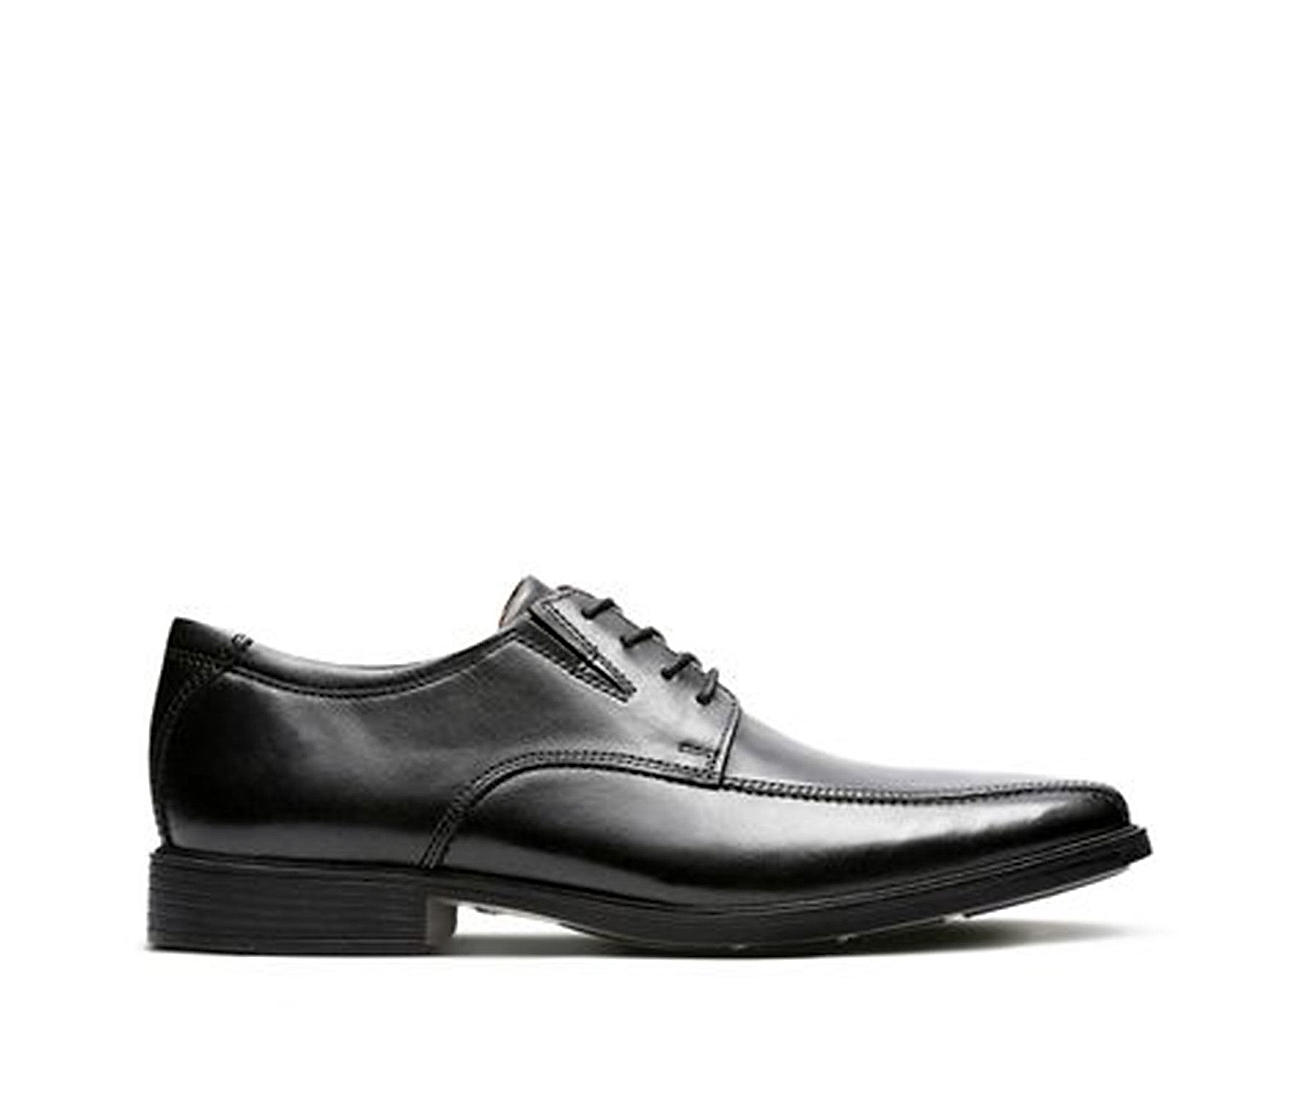 Buy Clarks Mens Black Tilden Walk Shoes Online at Regal Shoes |7817210